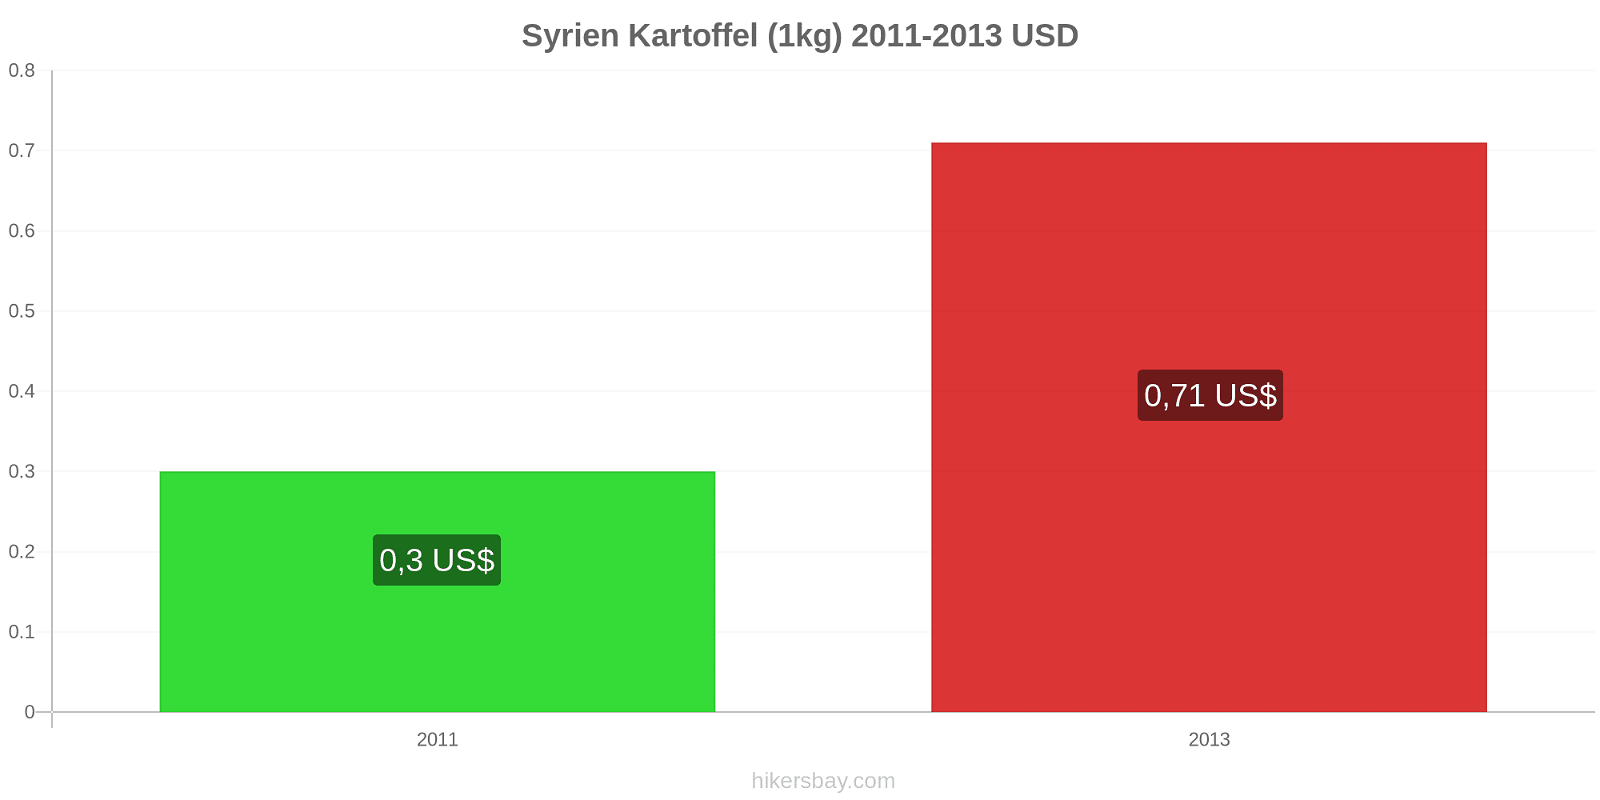 Syrien prisændringer Kartoffel (1kg) hikersbay.com